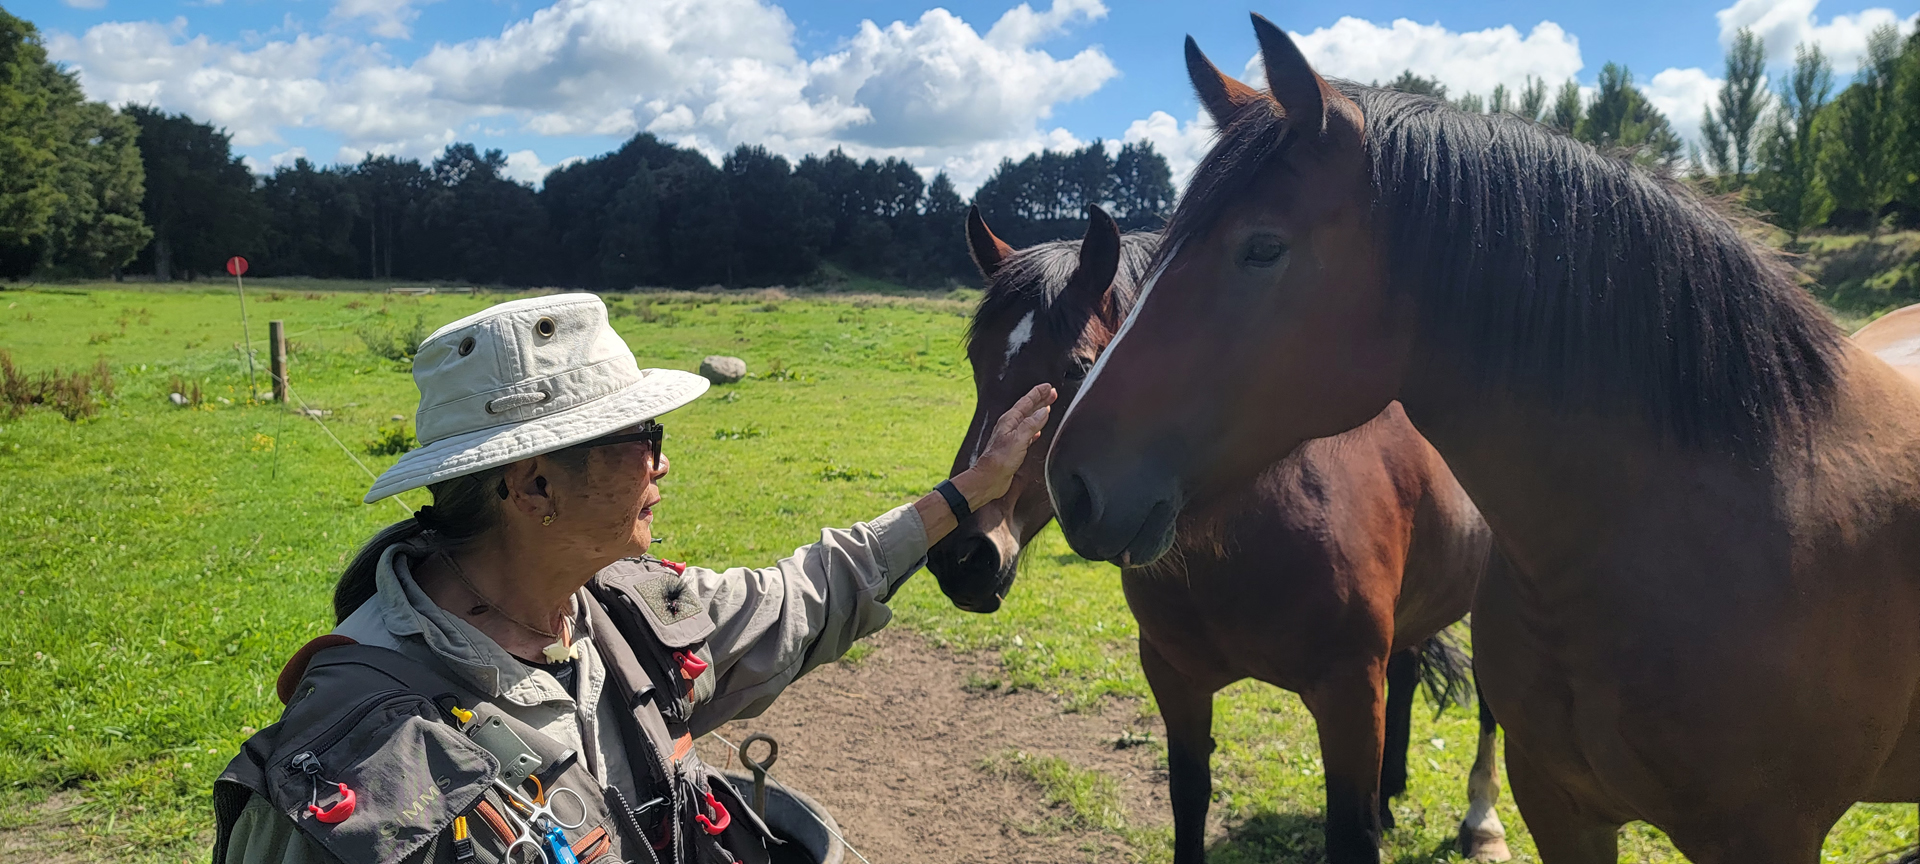 Donna with horses on the Ogle Farm Taumarunui, NZ